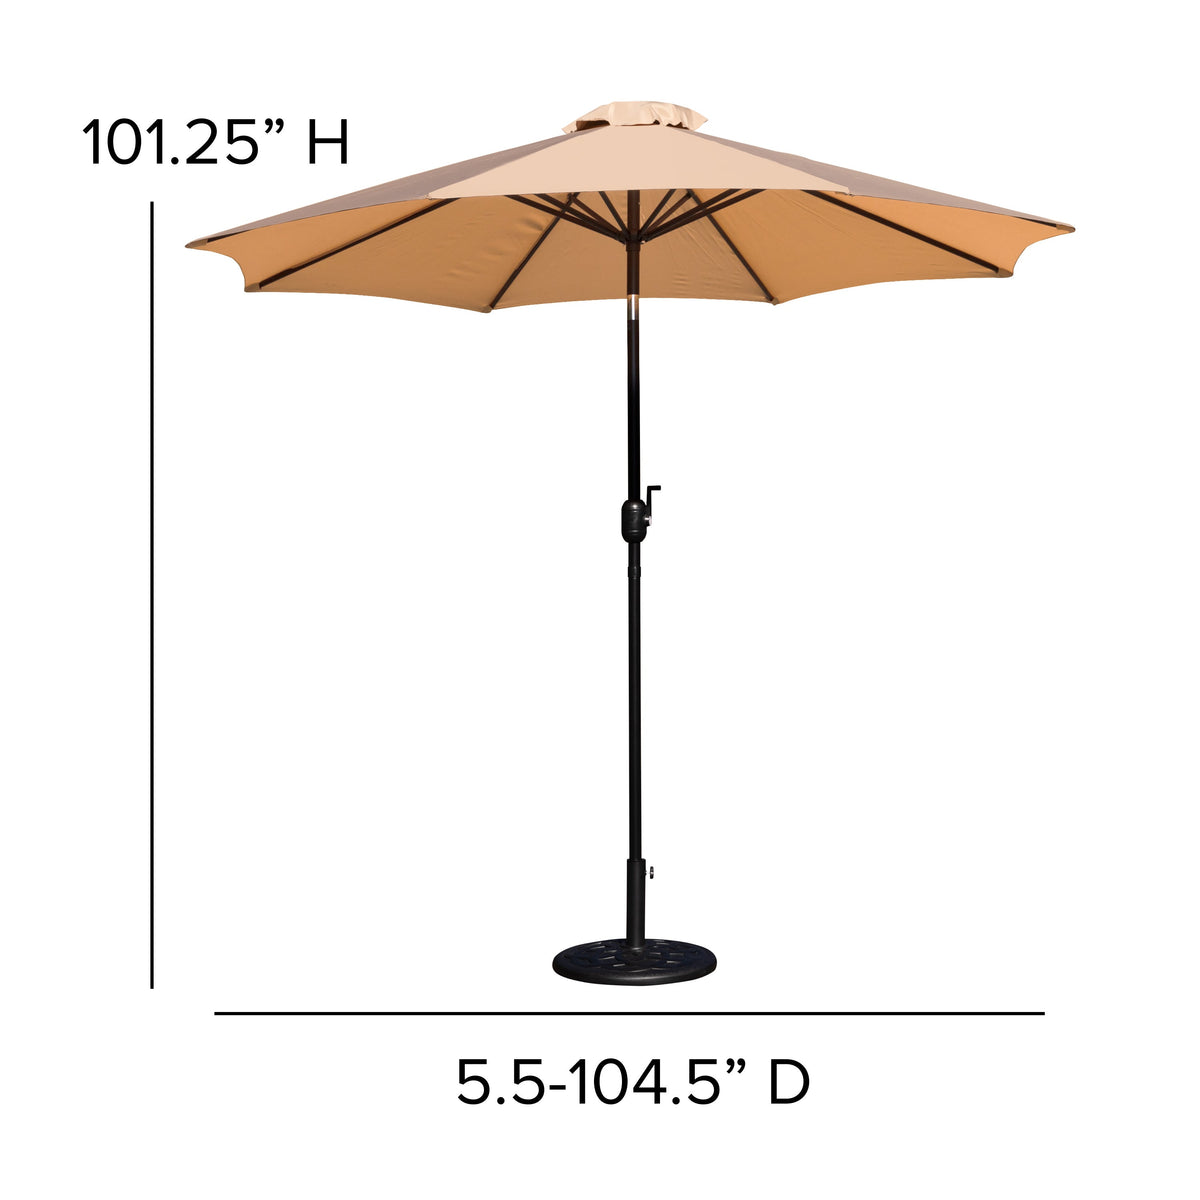 Tan |#| Bundled Set - Tan 9 FT Round Umbrella & Universal Black Cement Waterproof Base